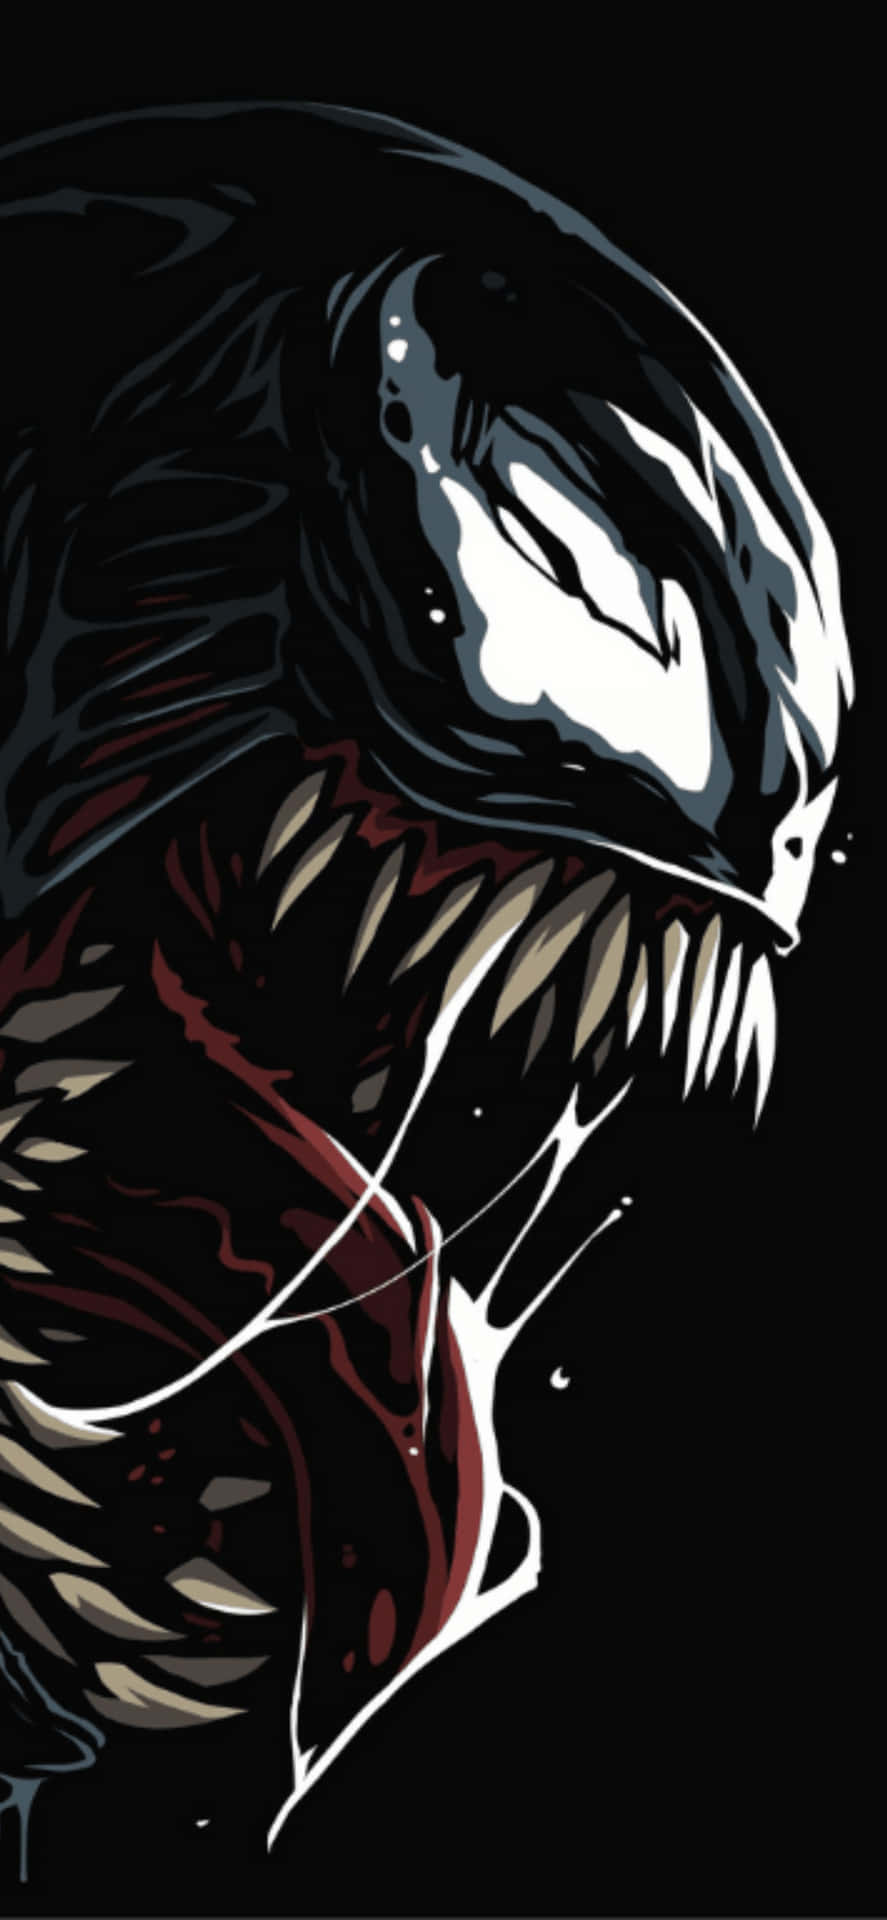 Venomhd-bakgrundsbild - Venom Hd-bakgrundsbild